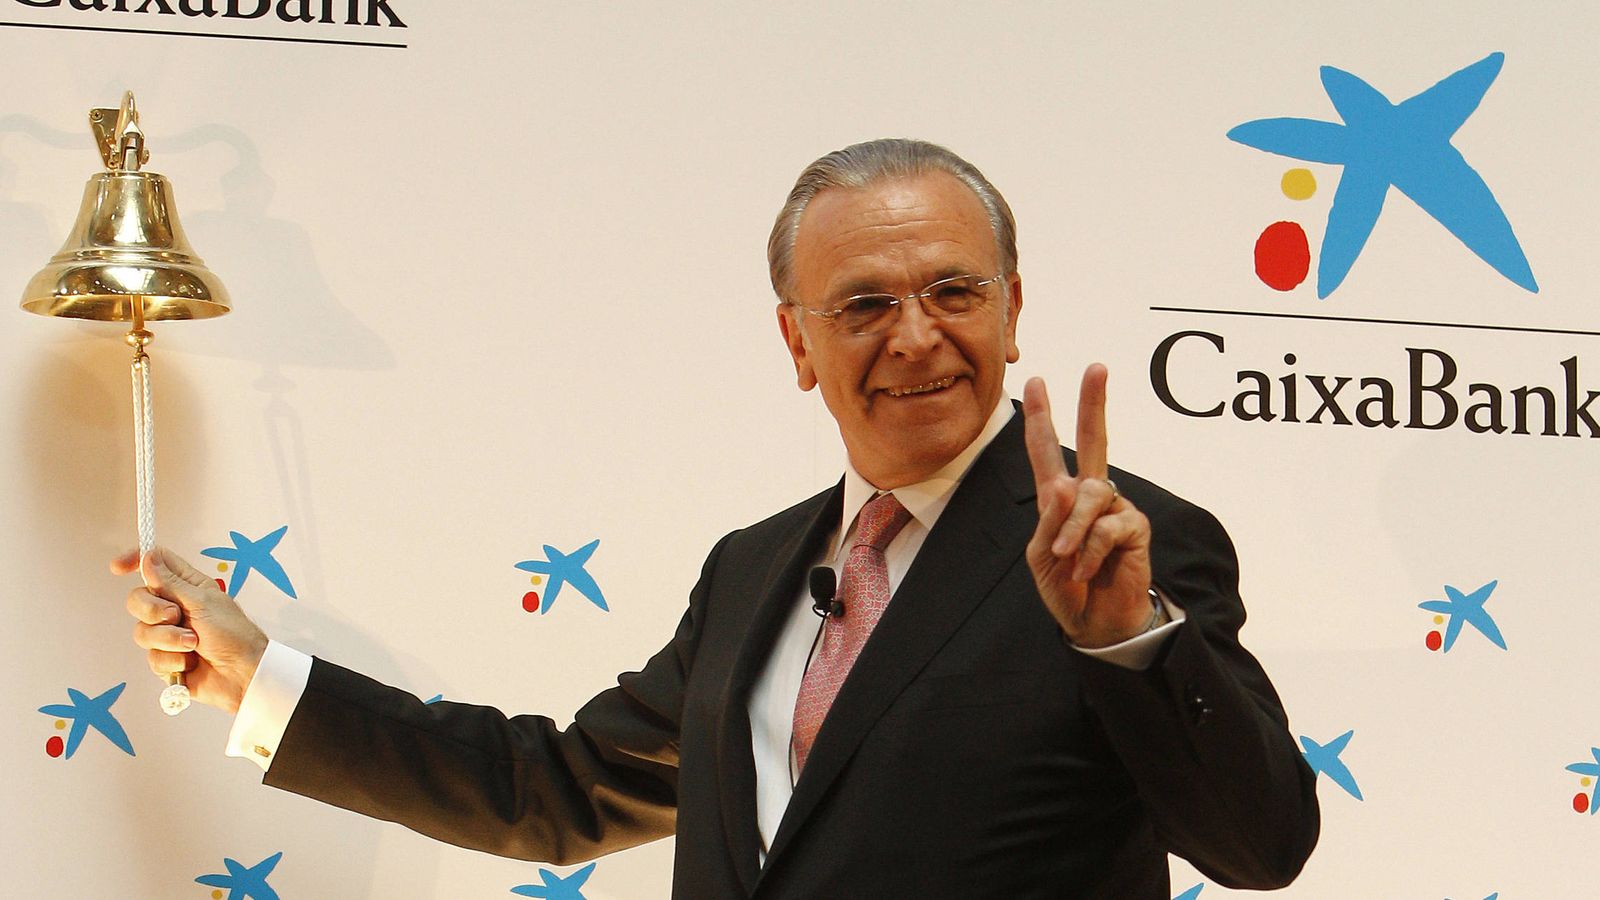 Foto: El presidente de La Caixa, Isidre Fainé, realizó el tradicional toque de campaña en la Bolsa de Madrid marcando el inicio de cotización en la Bolsa española de CaixaBank en 2011. (EFE)